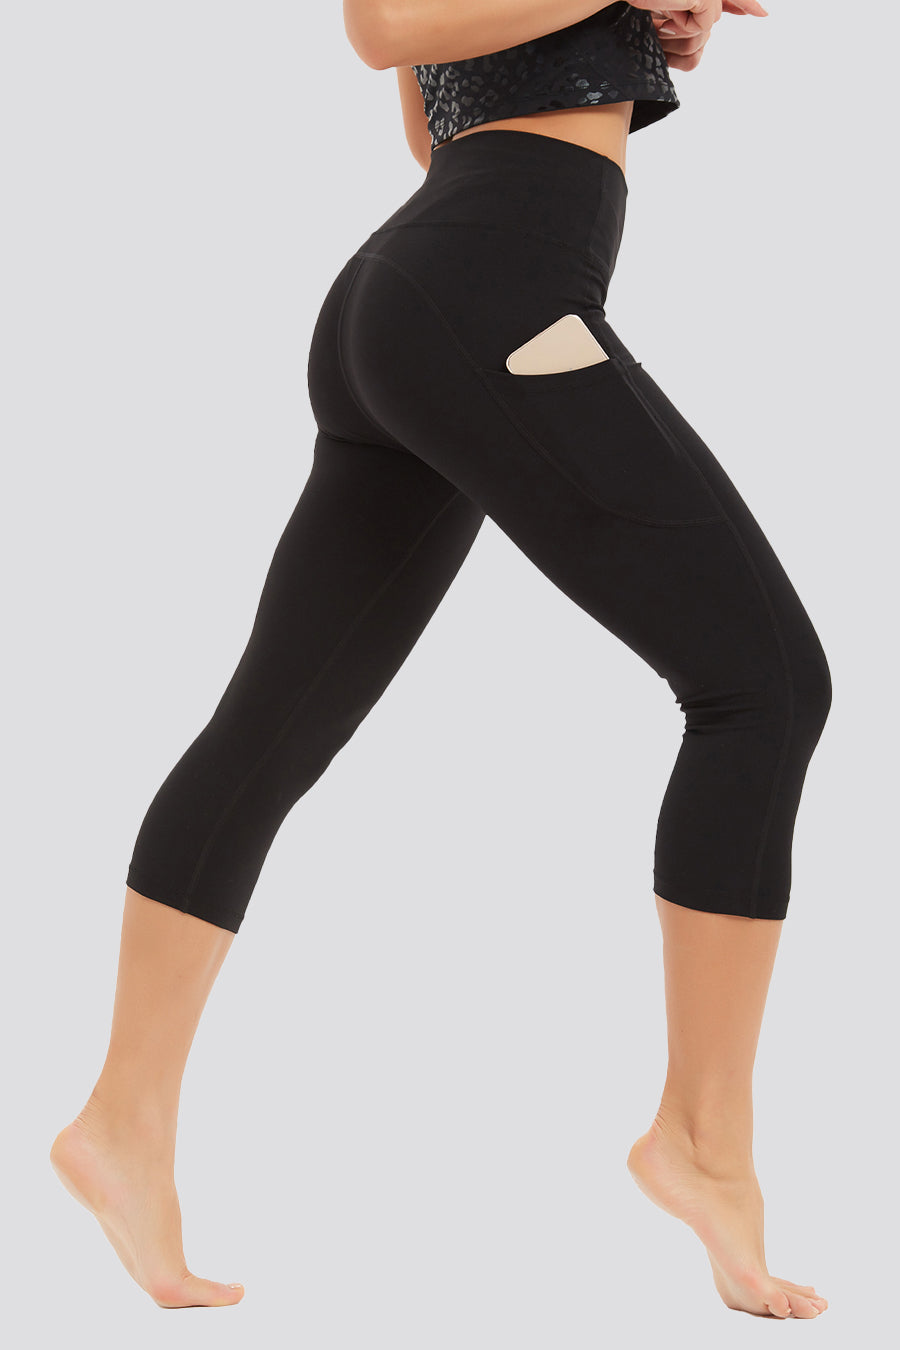 Stelle Women’s Comfy Capris Yoga Pants